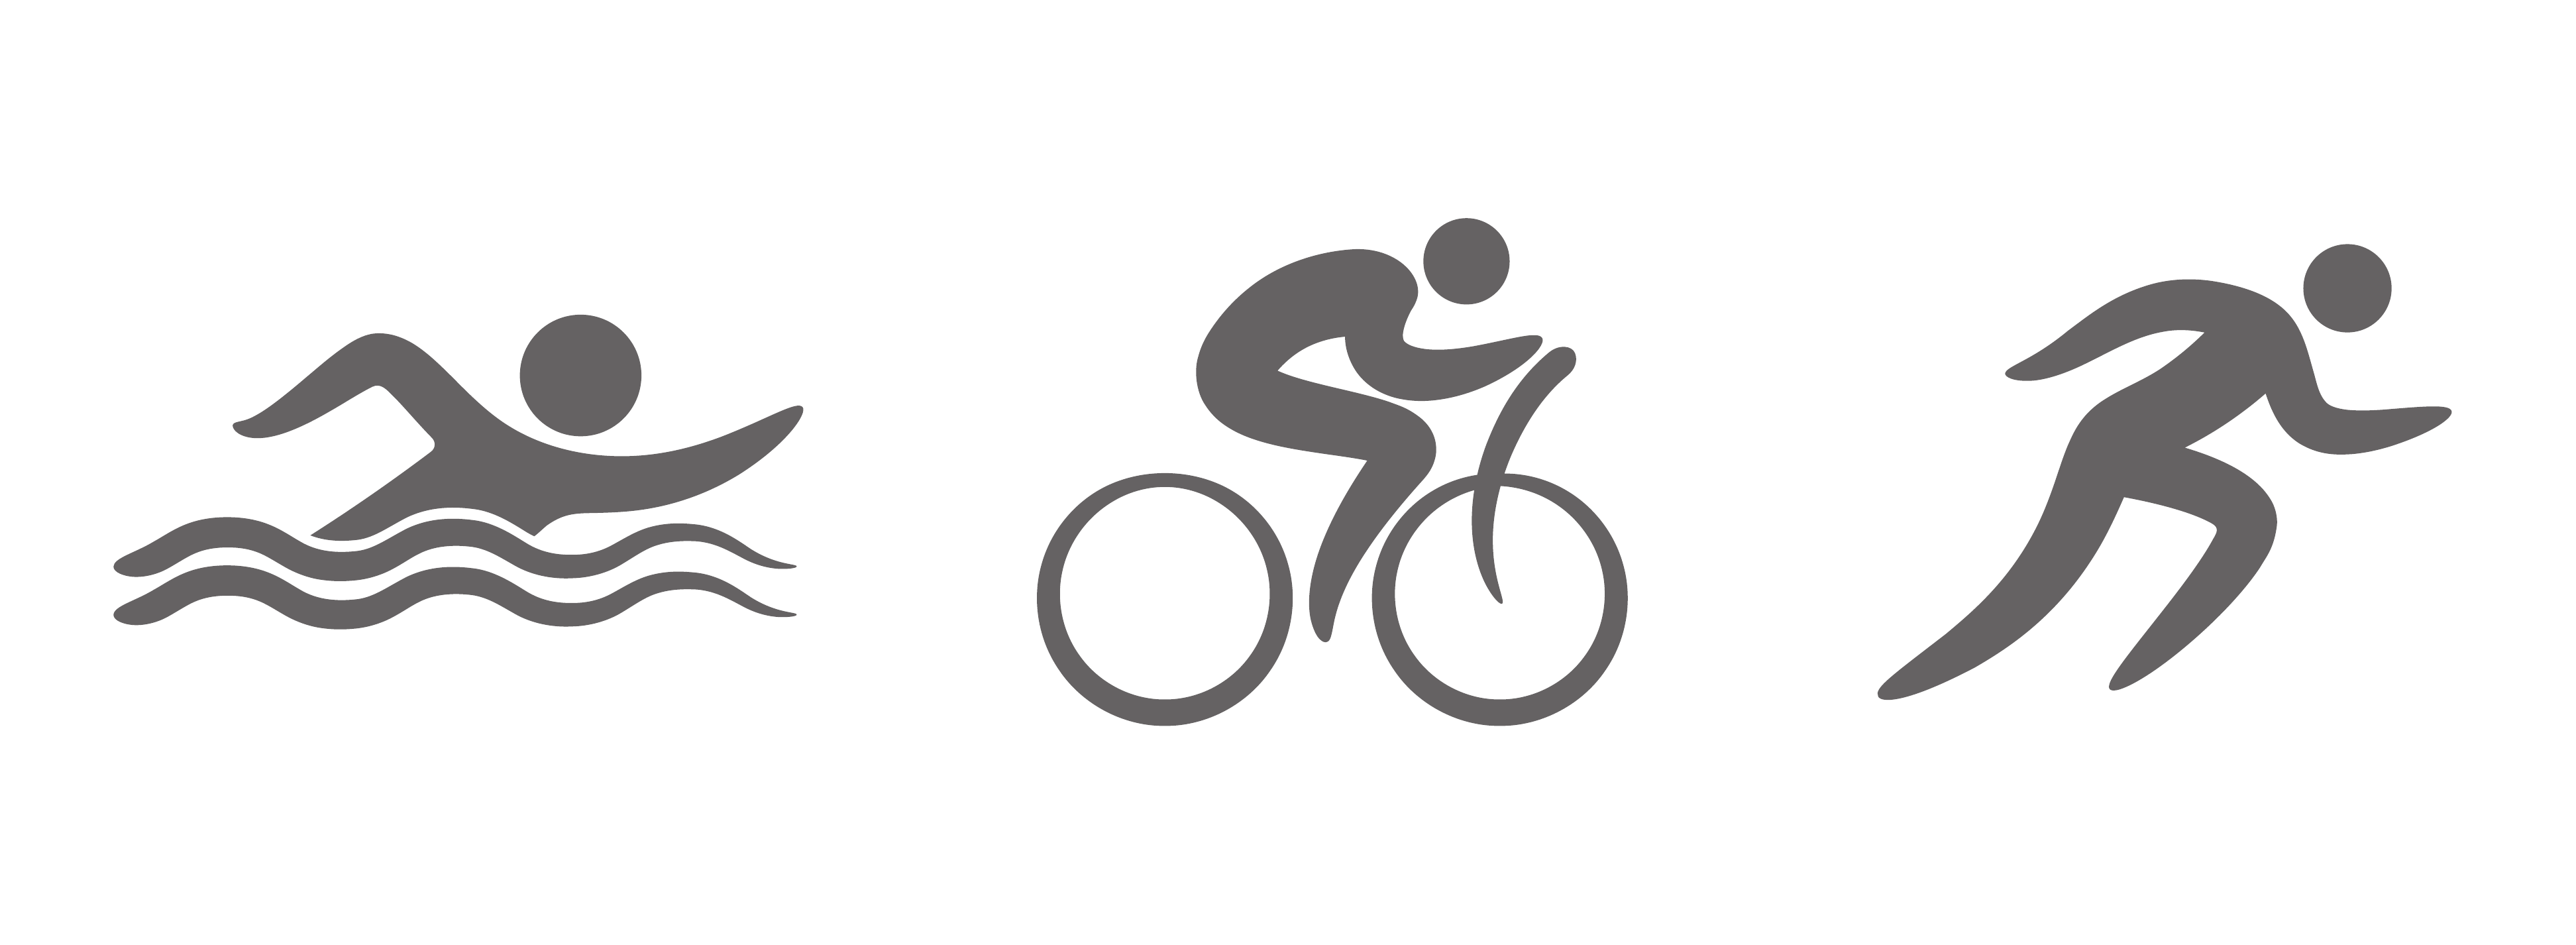 Многоборье с заплывом велогонкой и забегом. Плавание велосипед бег триатлон. Триатлон пиктограмма. Логотип Ironman Triathlon.